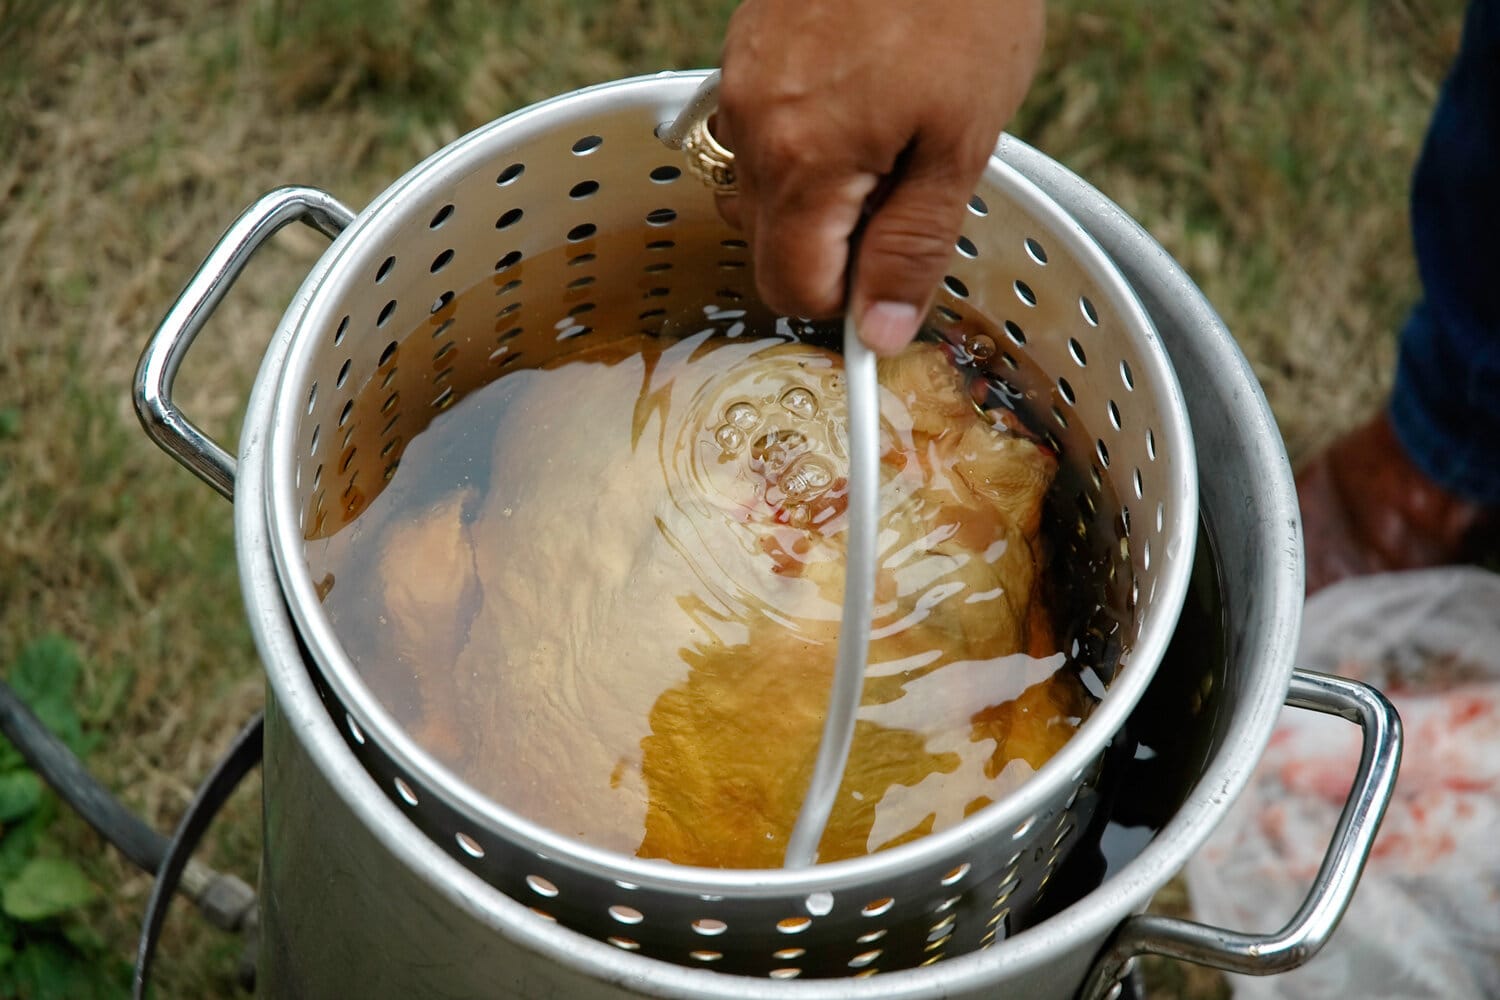 一只火鸡慢慢地放进装有热花生油的大锅里煎炸。